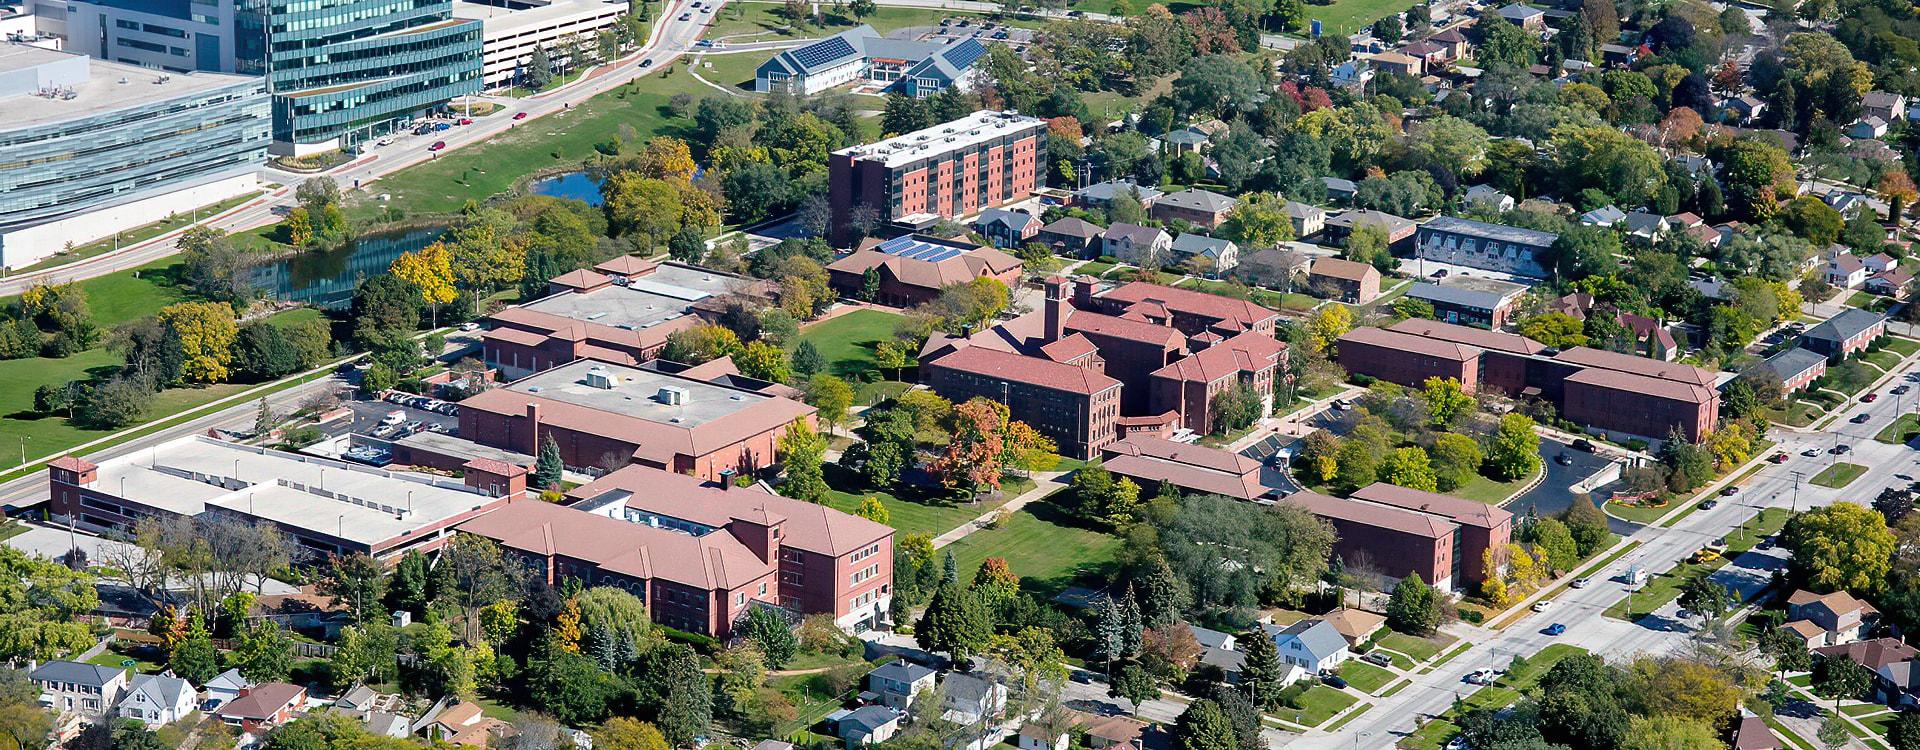 Aerial image of WLC campus